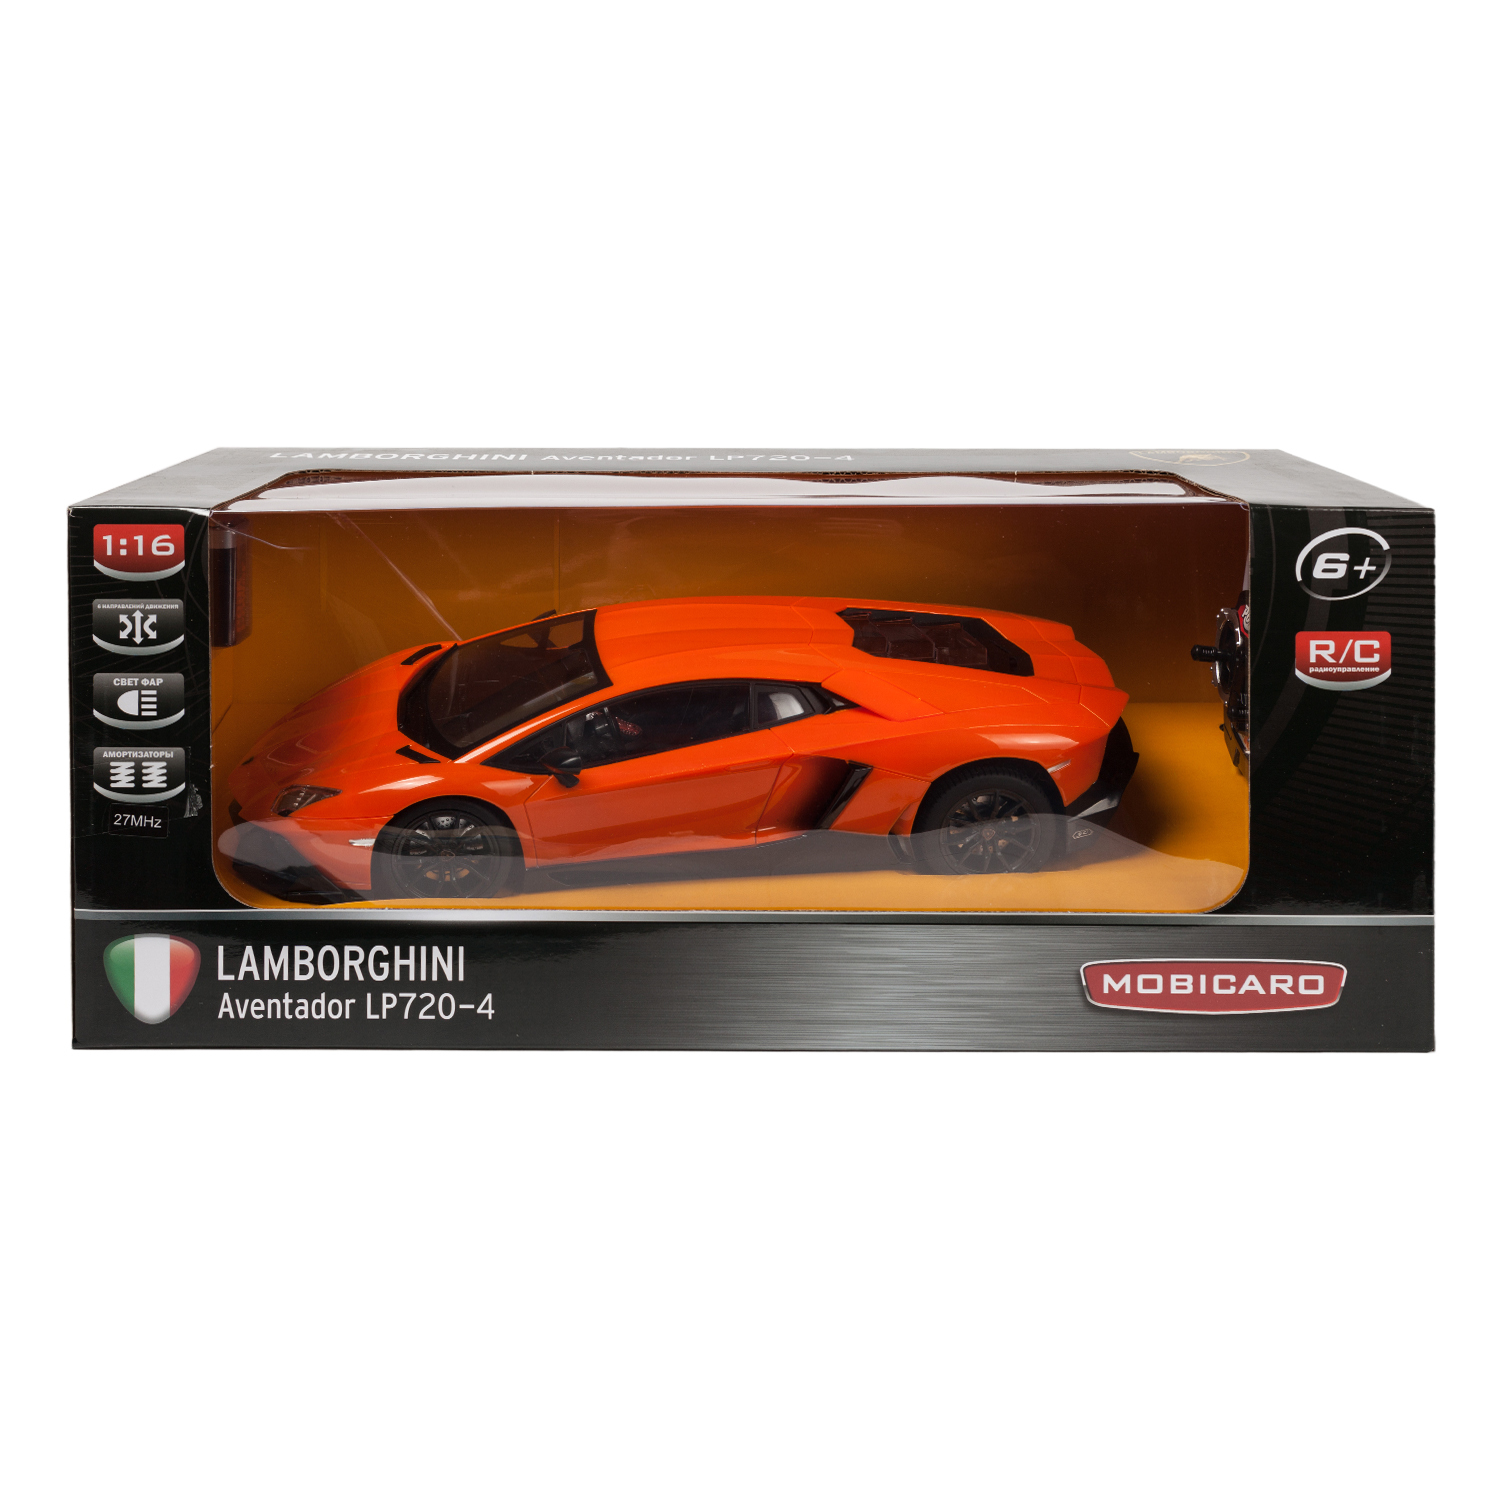 Машинка на радиоуправлении Mobicaro Lamborghini Aventador LP720-4 1:16 Оранжевая - фото 3